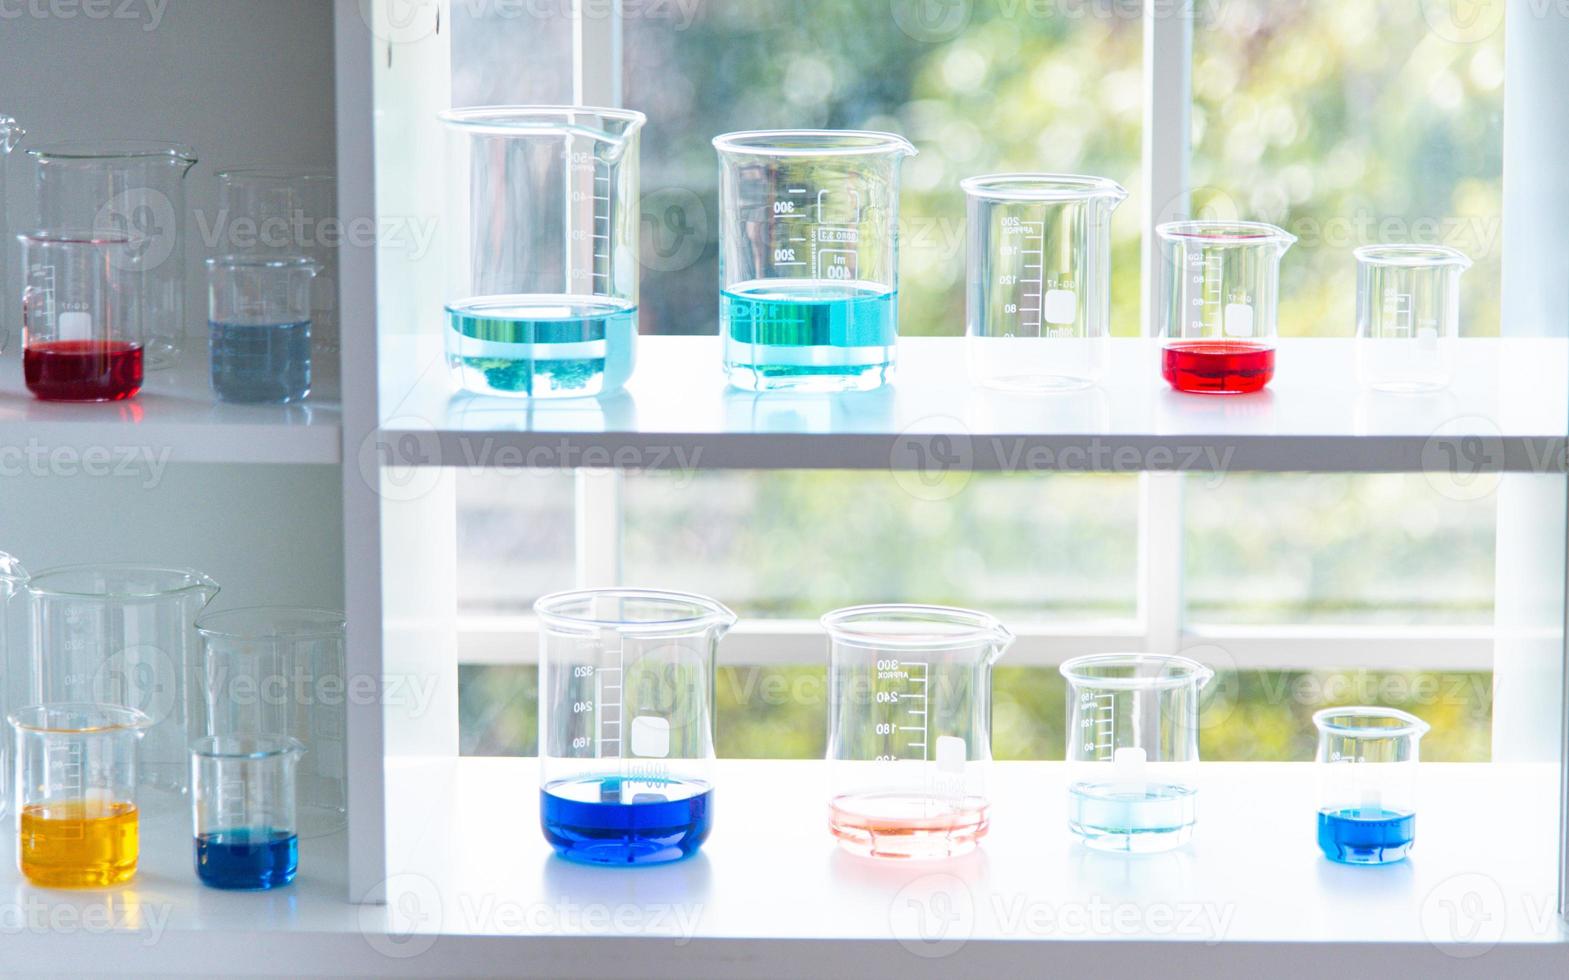 förbereder laboratorieutrustning som glas, rör med blått och vätska på det vita bordet. kemiexperimentet i vetenskaplig forskning foto